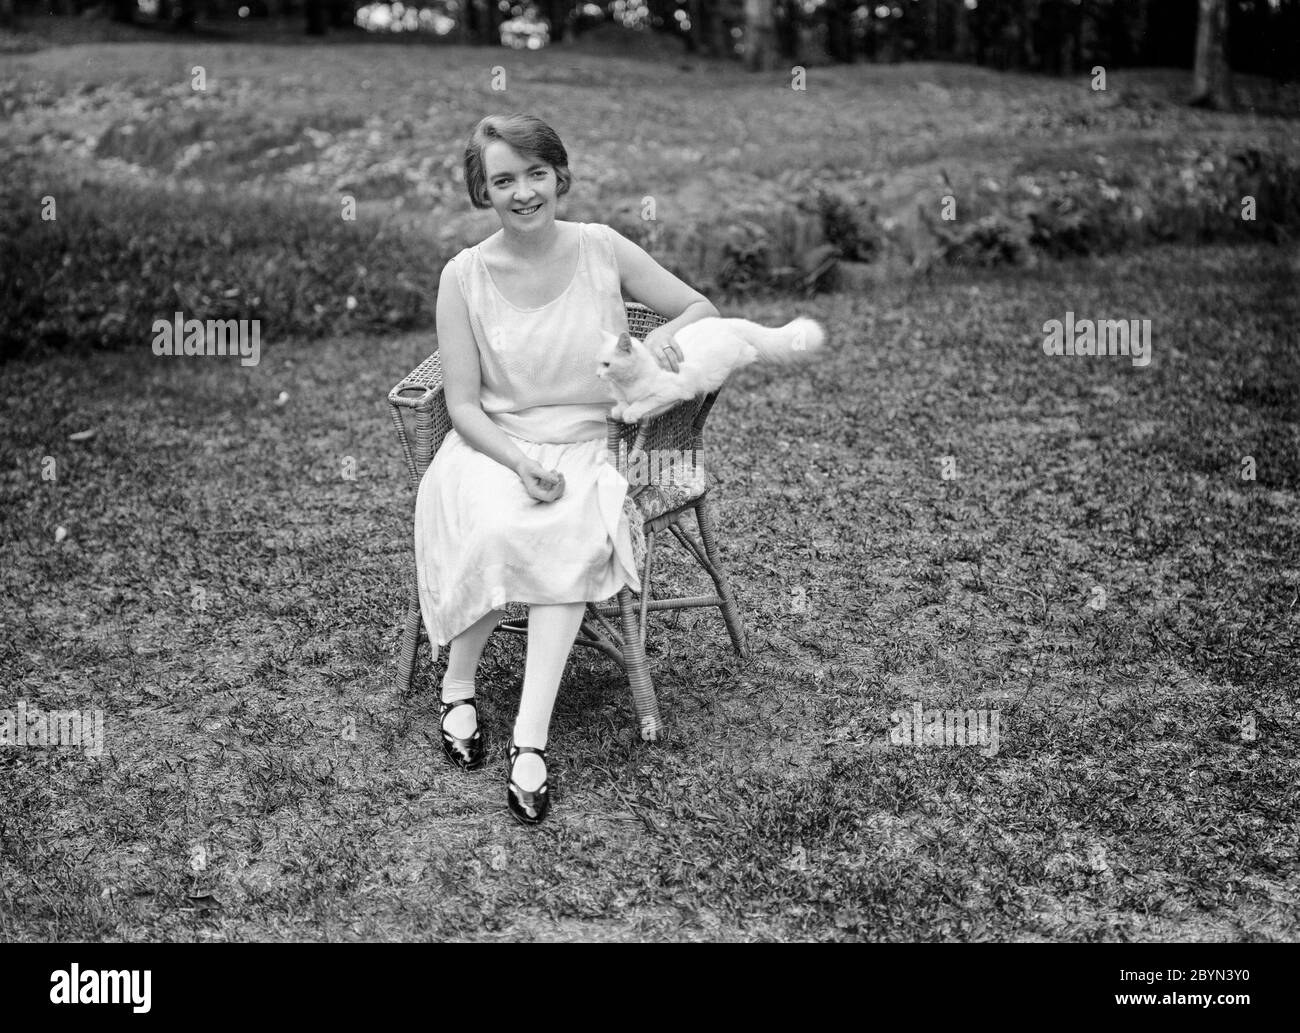 Photographie anglaise vintage noir et blanc du début du XXe siècle montrant une jeune femme, assise dans un fauteuil en osier, dans un jardin, tenant un chat. La femme montre la mode et le style de cheveux de l'époque, années 1920. Banque D'Images